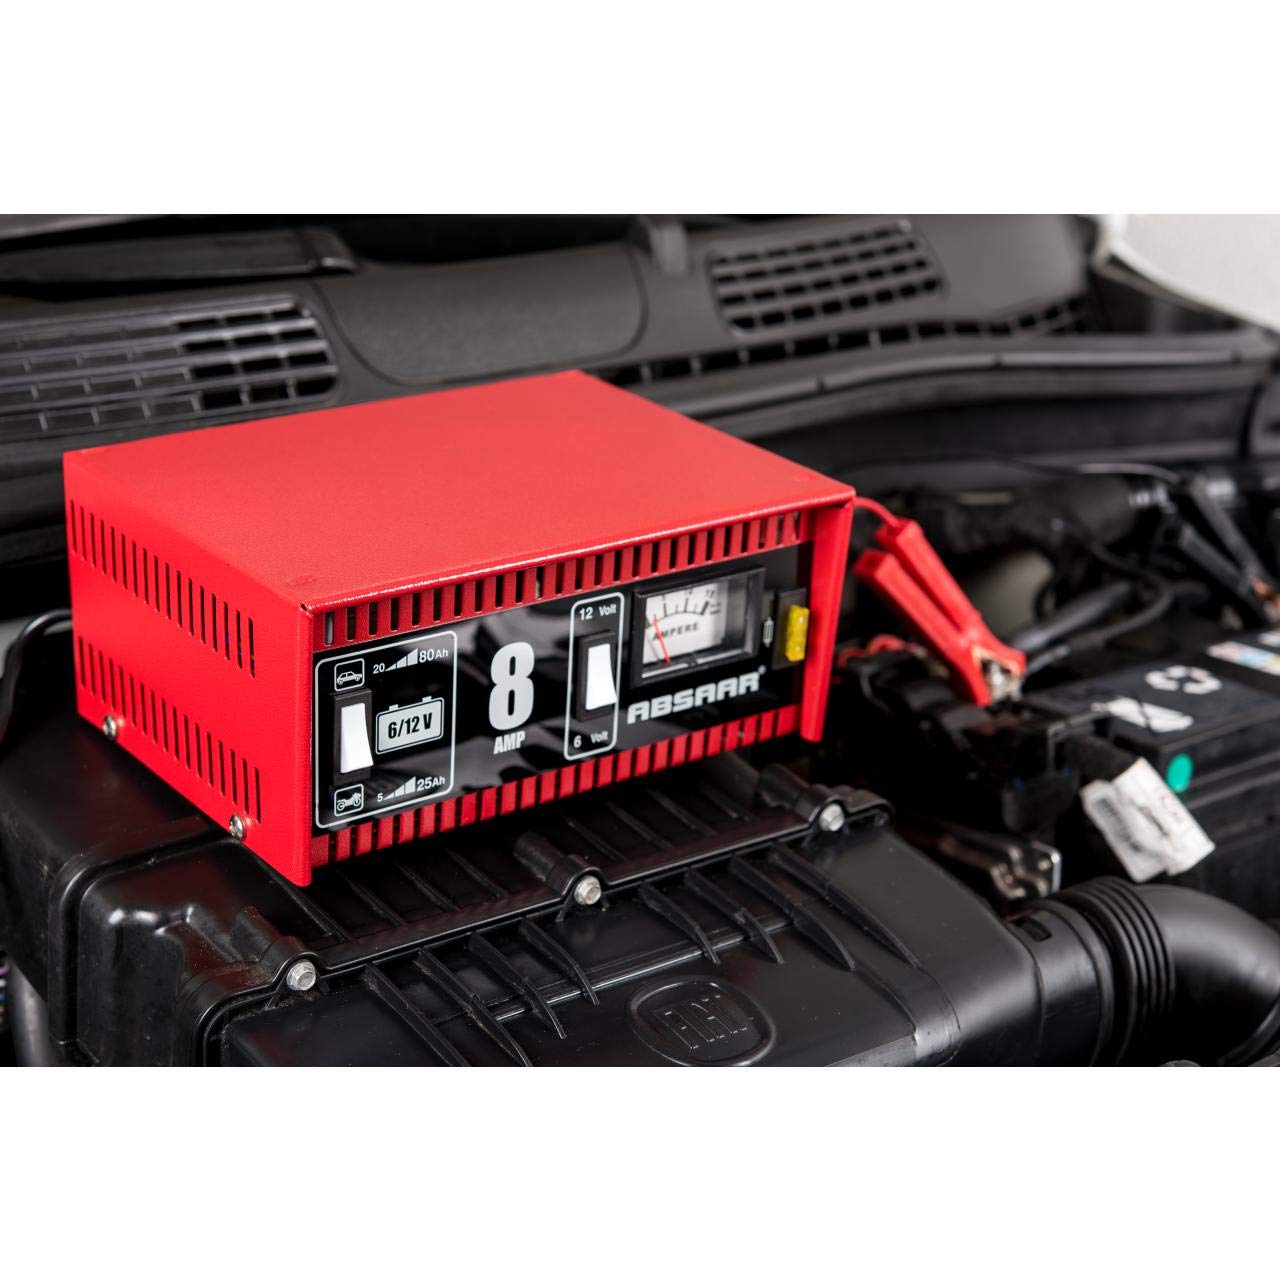 Absaar 77911 Batterie-Ladegerät für Auto/Motorrad 8A, umschaltbar 6/12V, rot/schwarz von Absaar